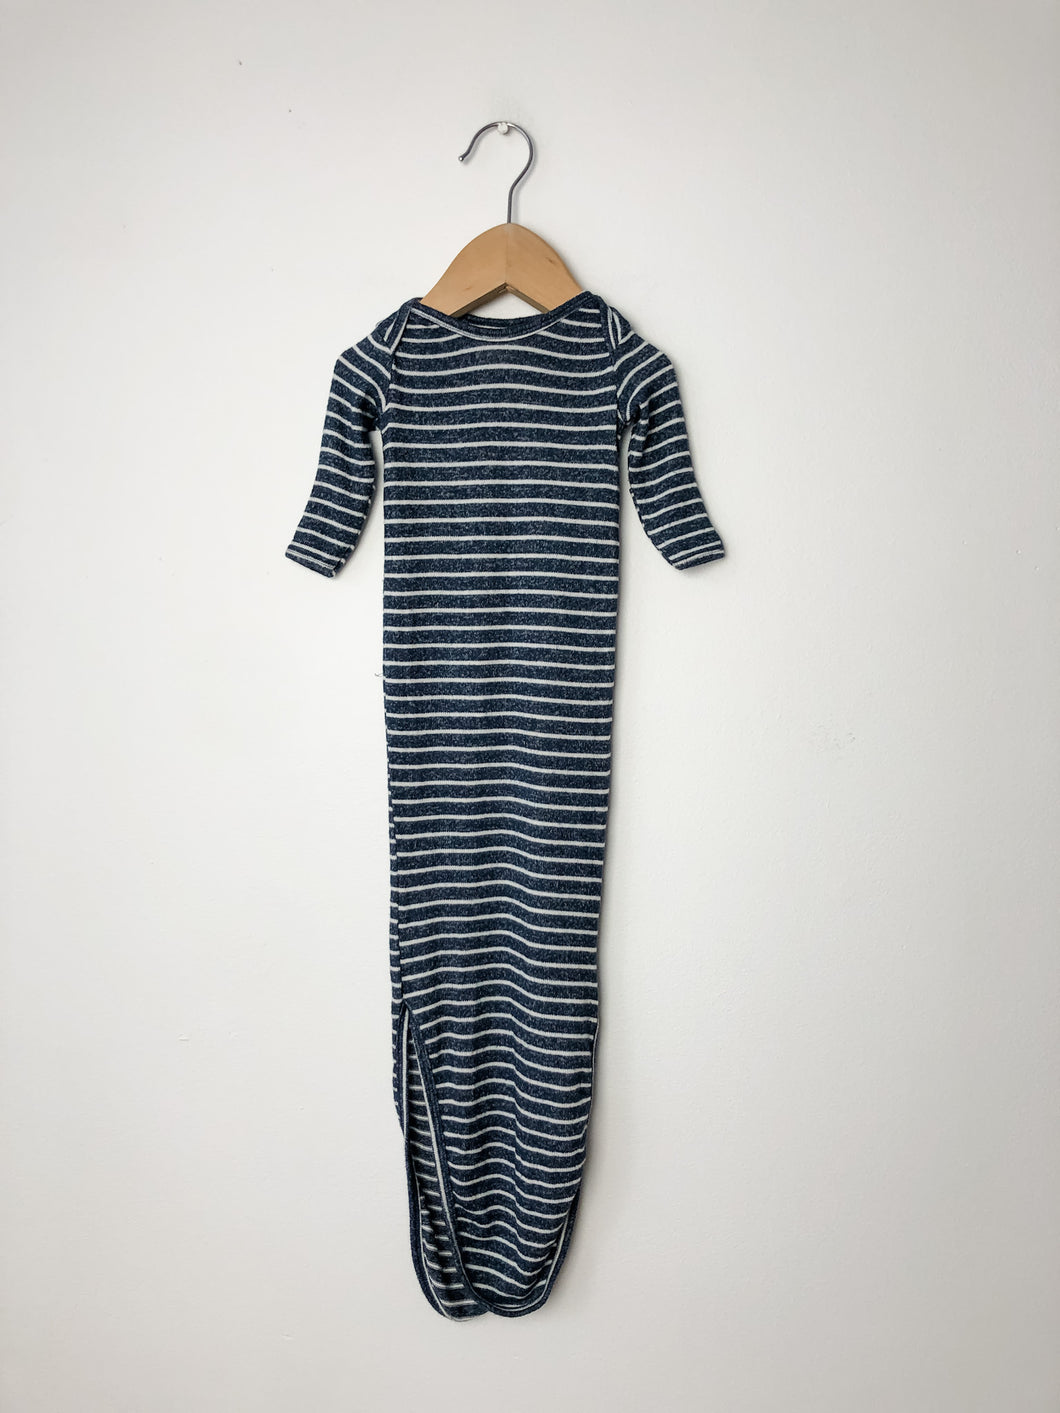 Striped Aden + Anais Gown Size Newborn